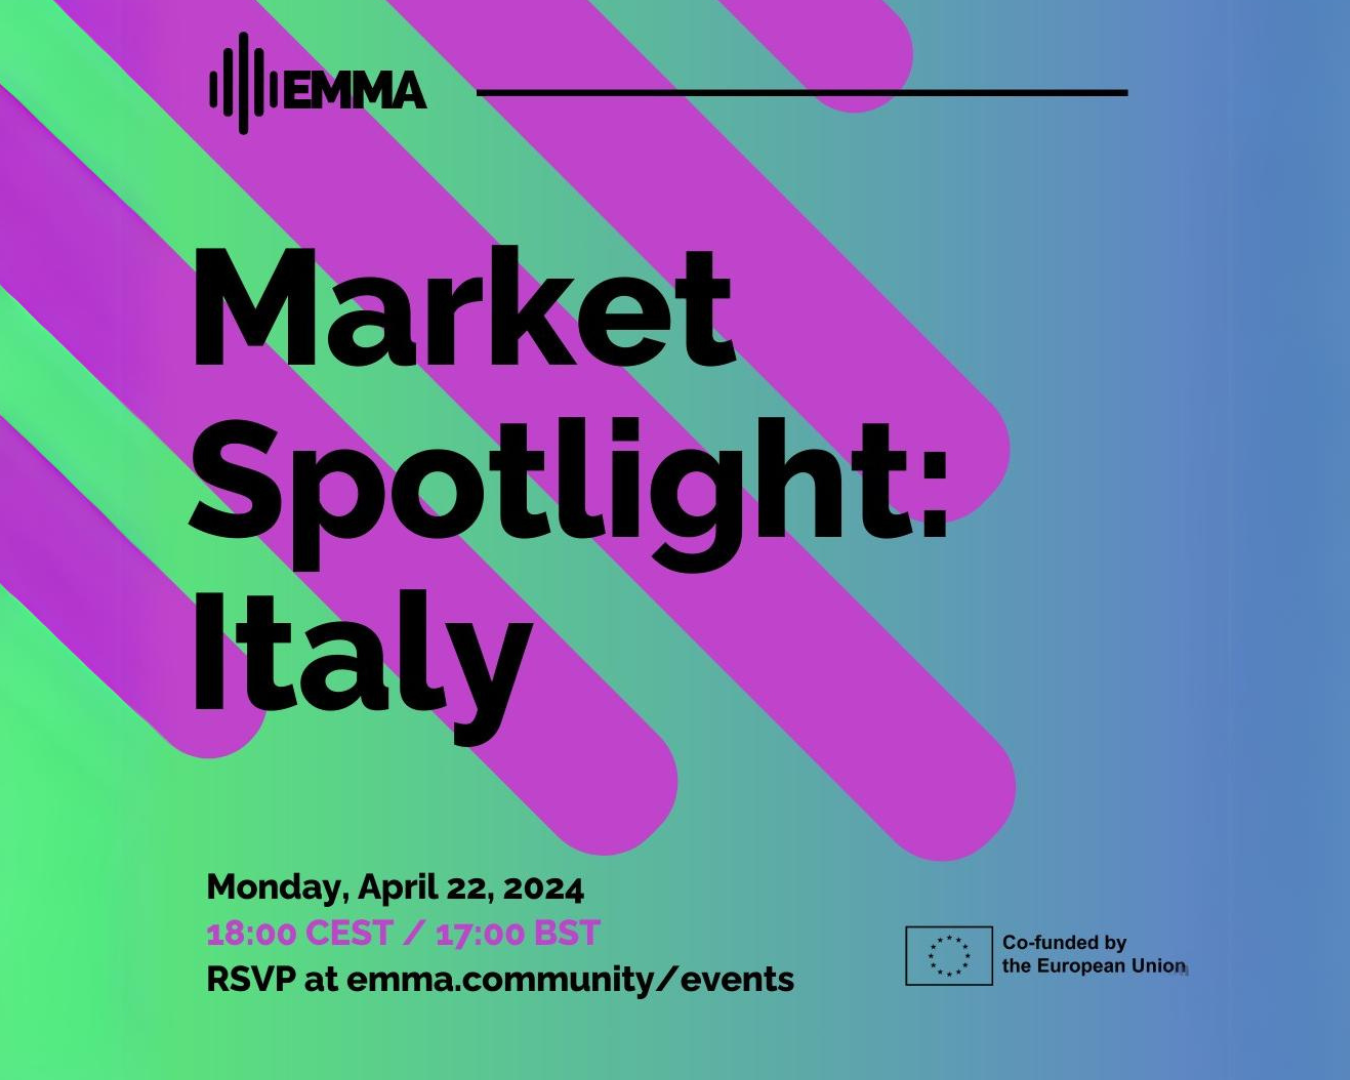 EMMA Market Spotlight: Italy